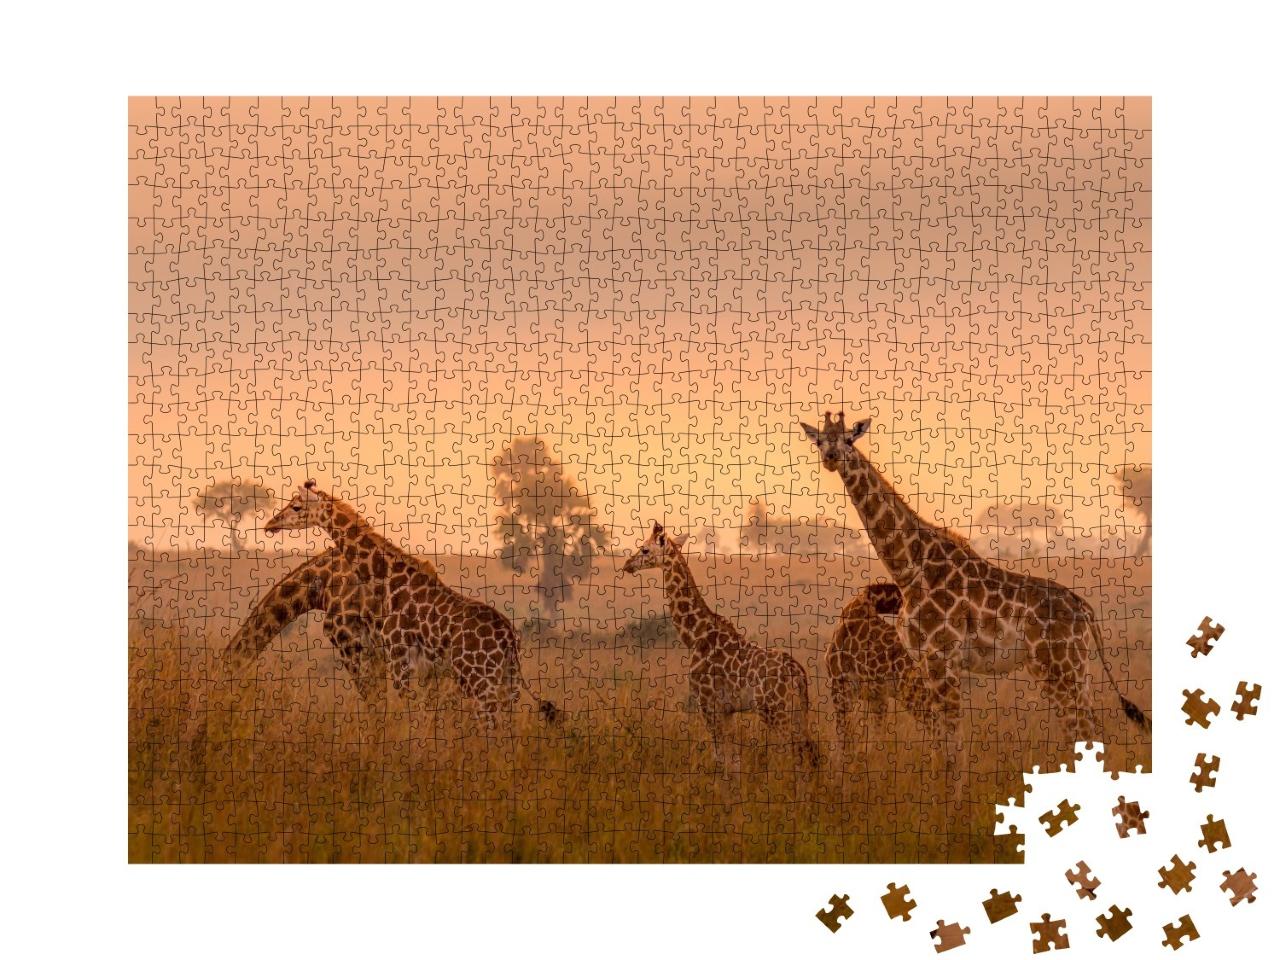 Puzzle de 1000 pièces « Girafes de Rothschild au lever du soleil, Parc national de Murchison Falls, Ouganda »